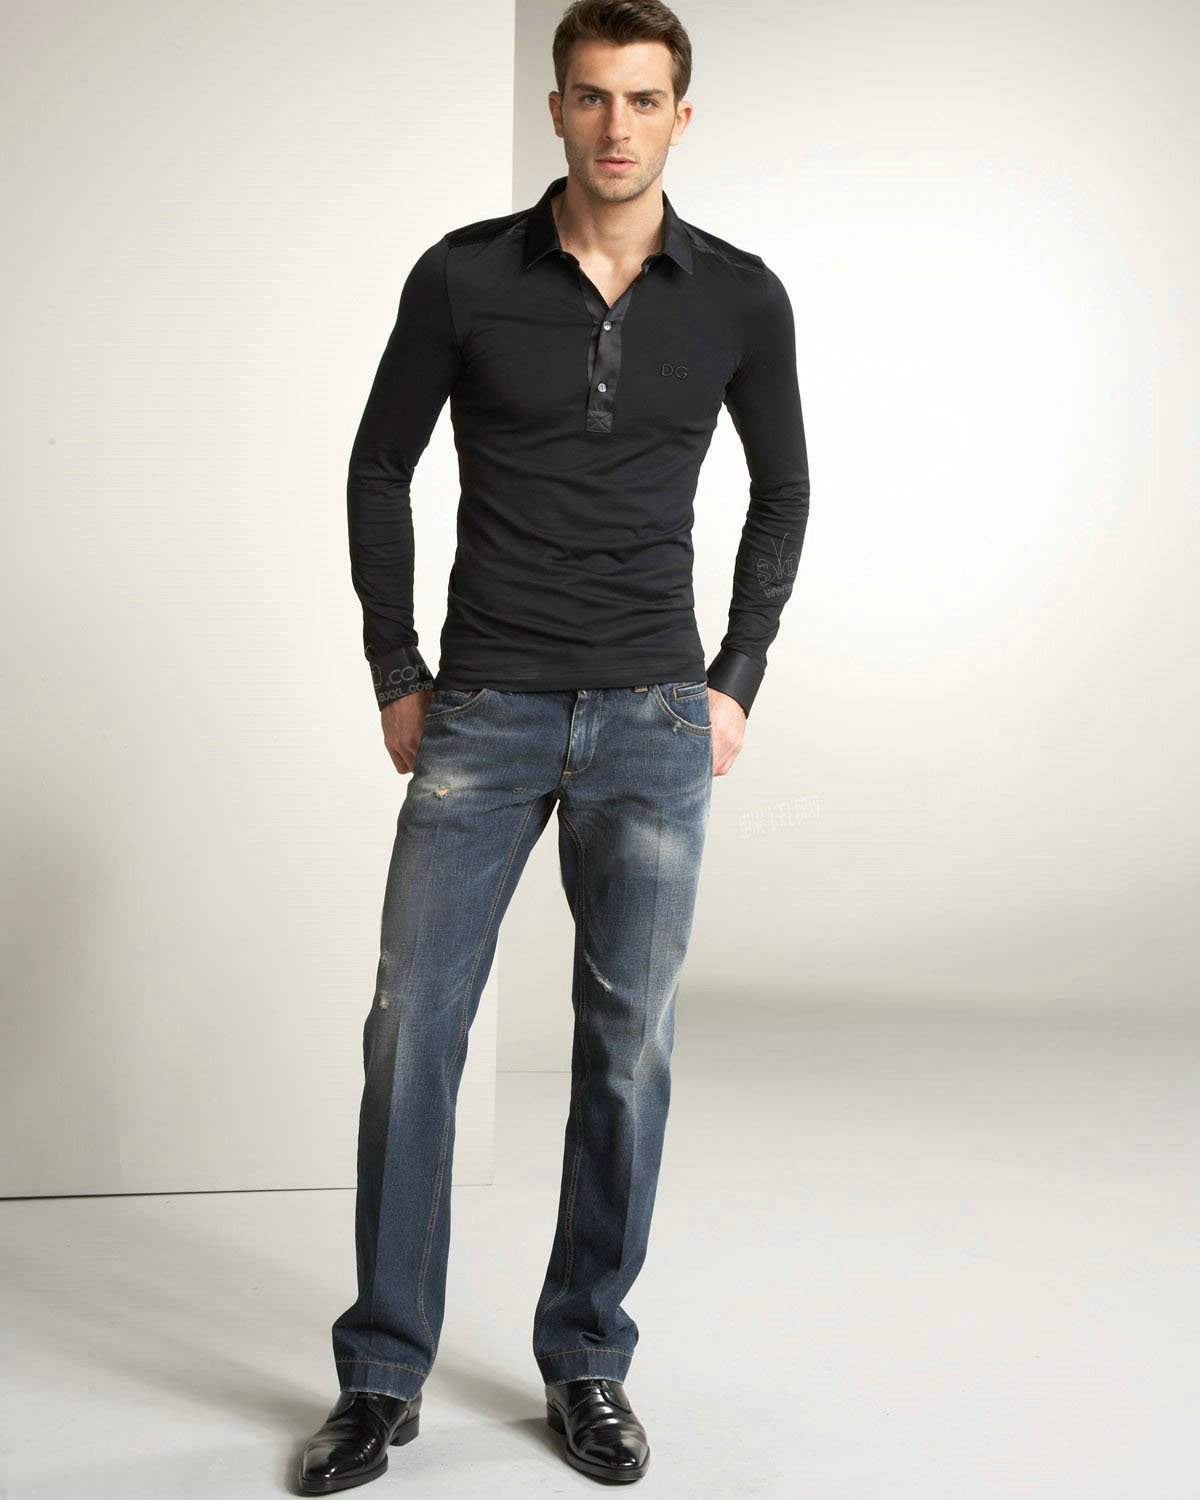 camisa social calça jeans e sapato social